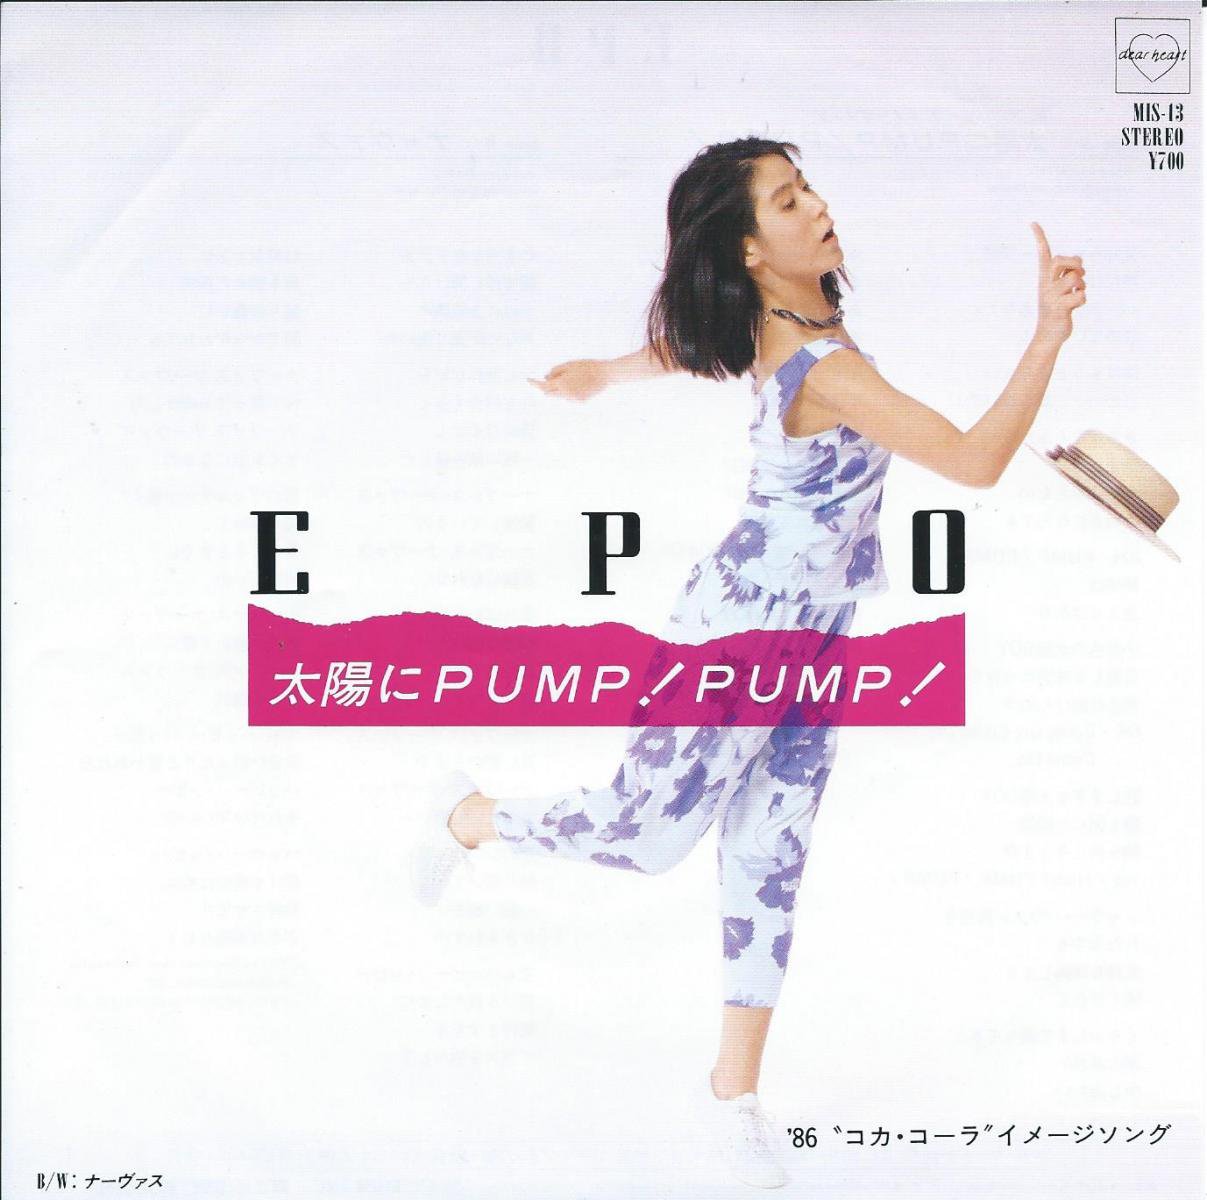 エポ EPO / 太陽にPUMP! PUMP! / ナーヴァス (7